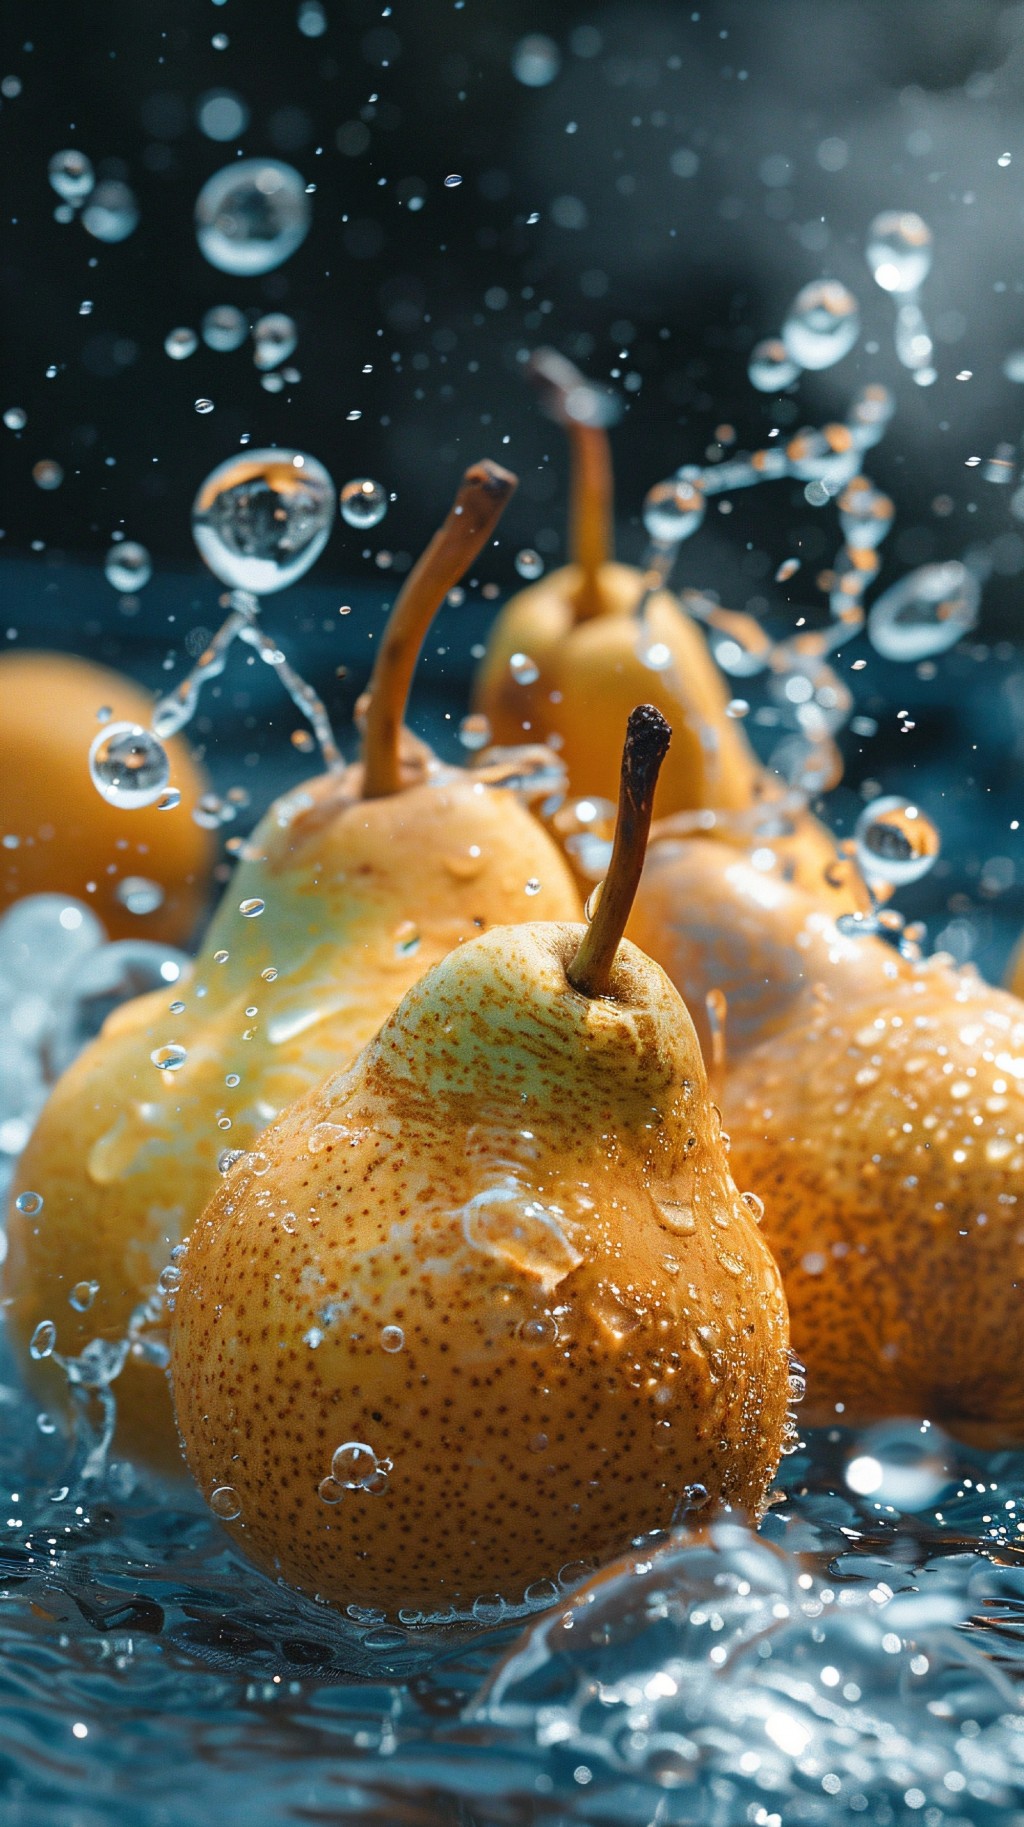 水果摄影写真系列——梨